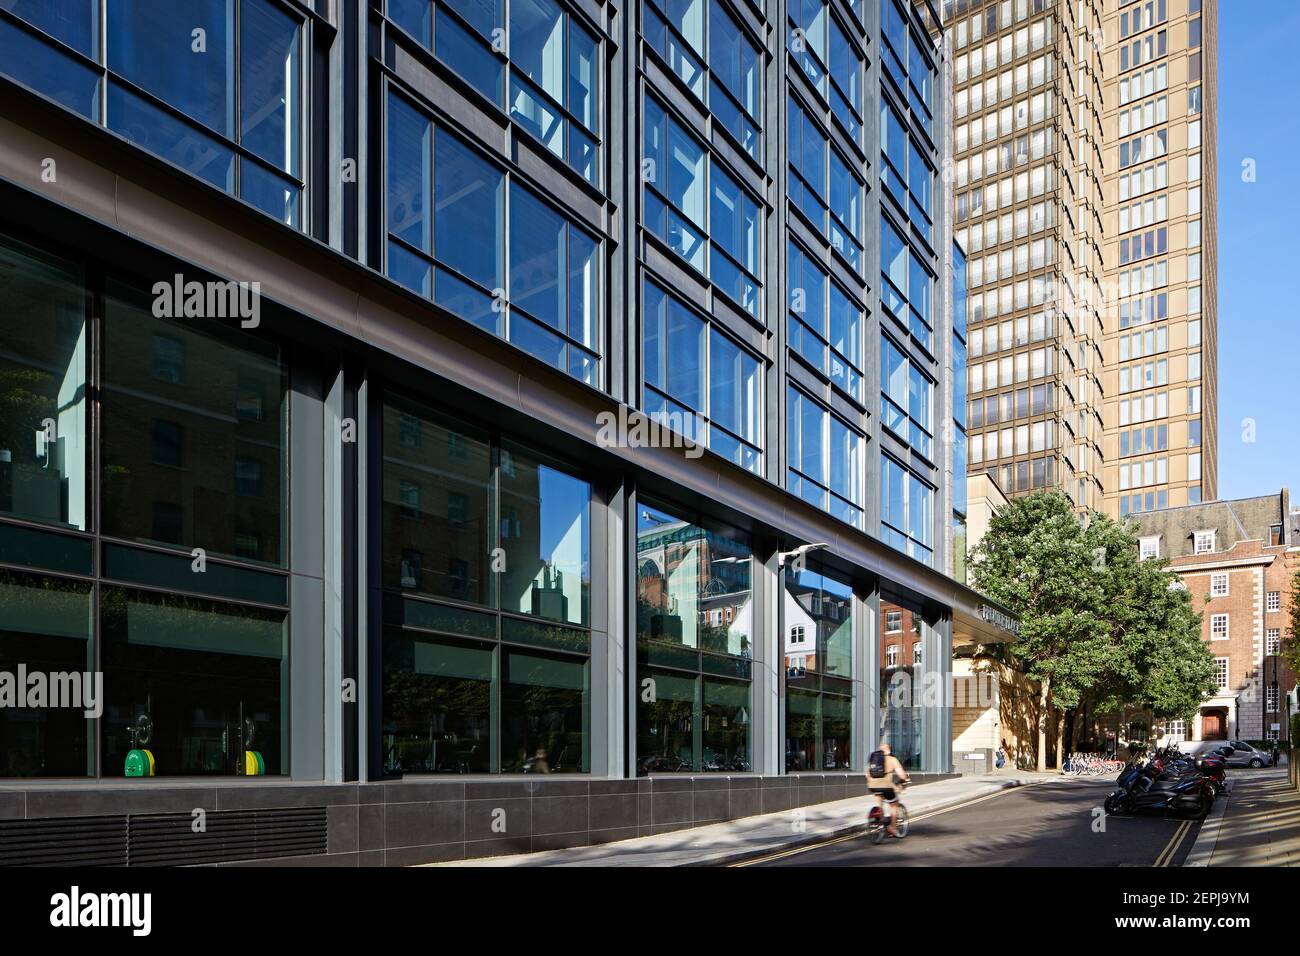 Devonshire Square Elevation mit Menschen zu Fuß vorbei. Premier Place, City of London, Großbritannien. Architekt: Stiff + Trevillion Architects, 2019. Stockfoto